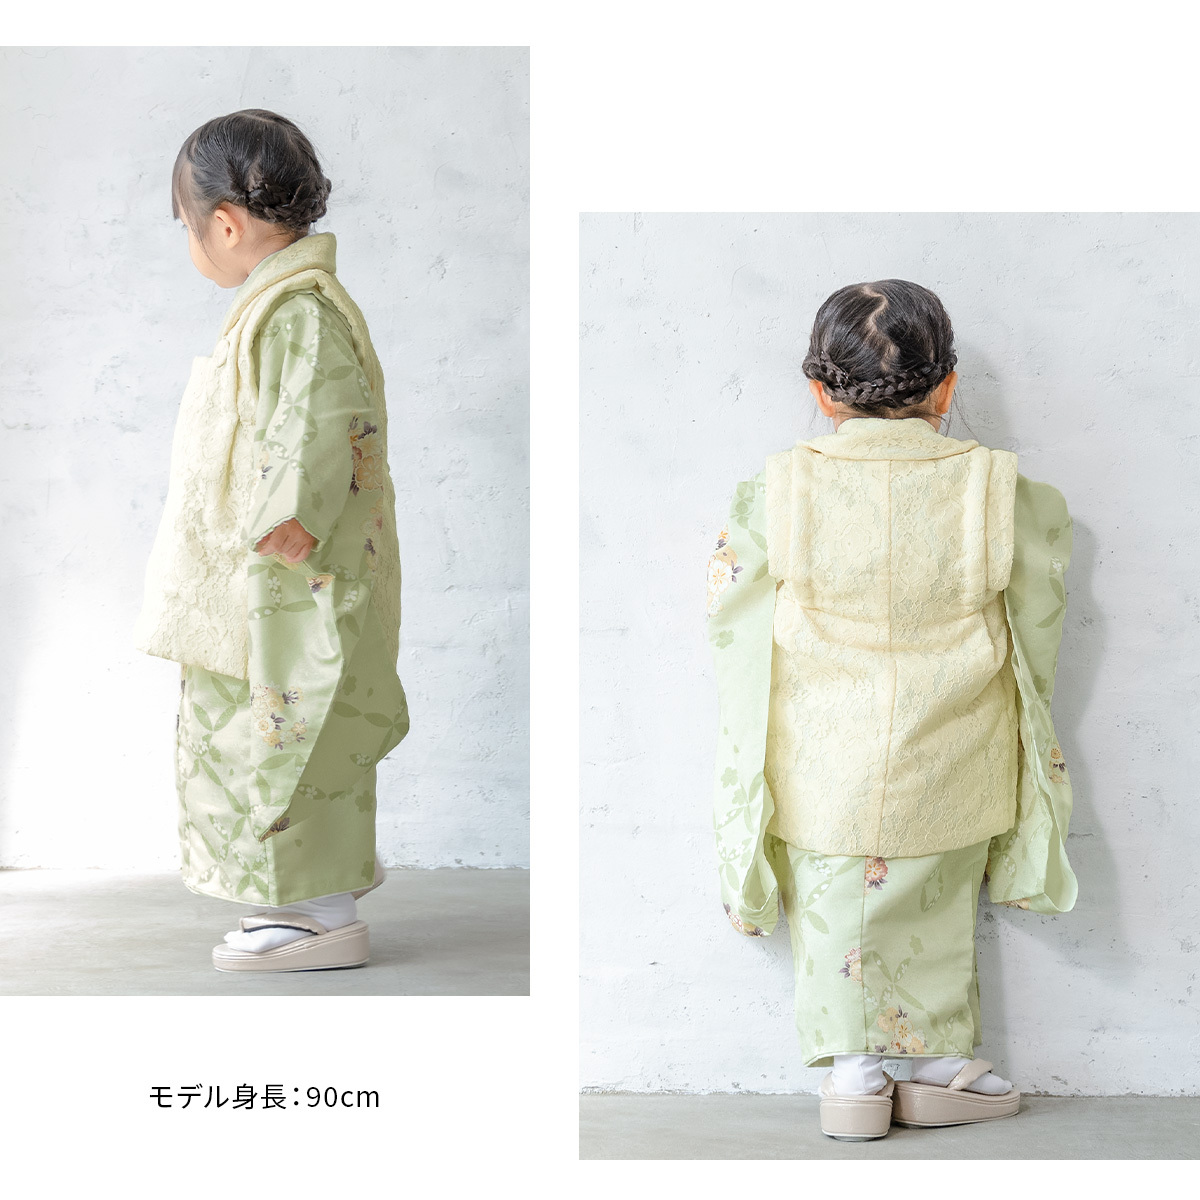 七五三 着物 3歳 販売 女の子 三歳 着物セット 被布セット クリーム 緑 